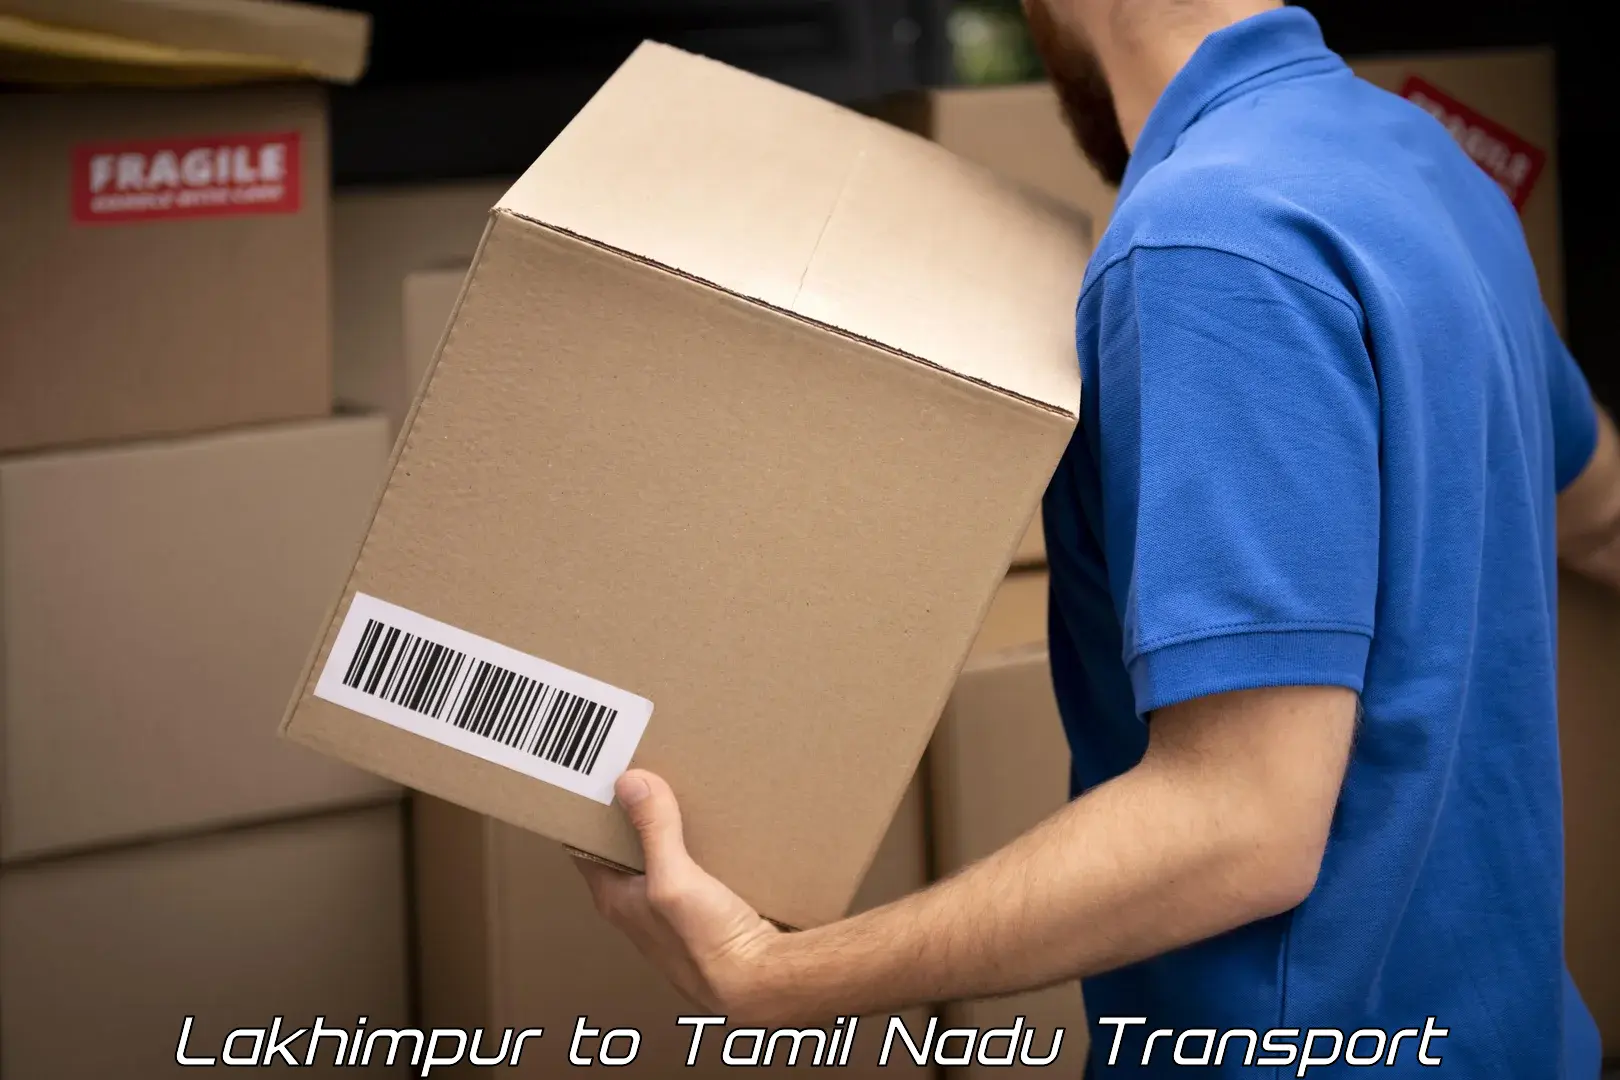 Furniture transport service Lakhimpur to Kanchipuram